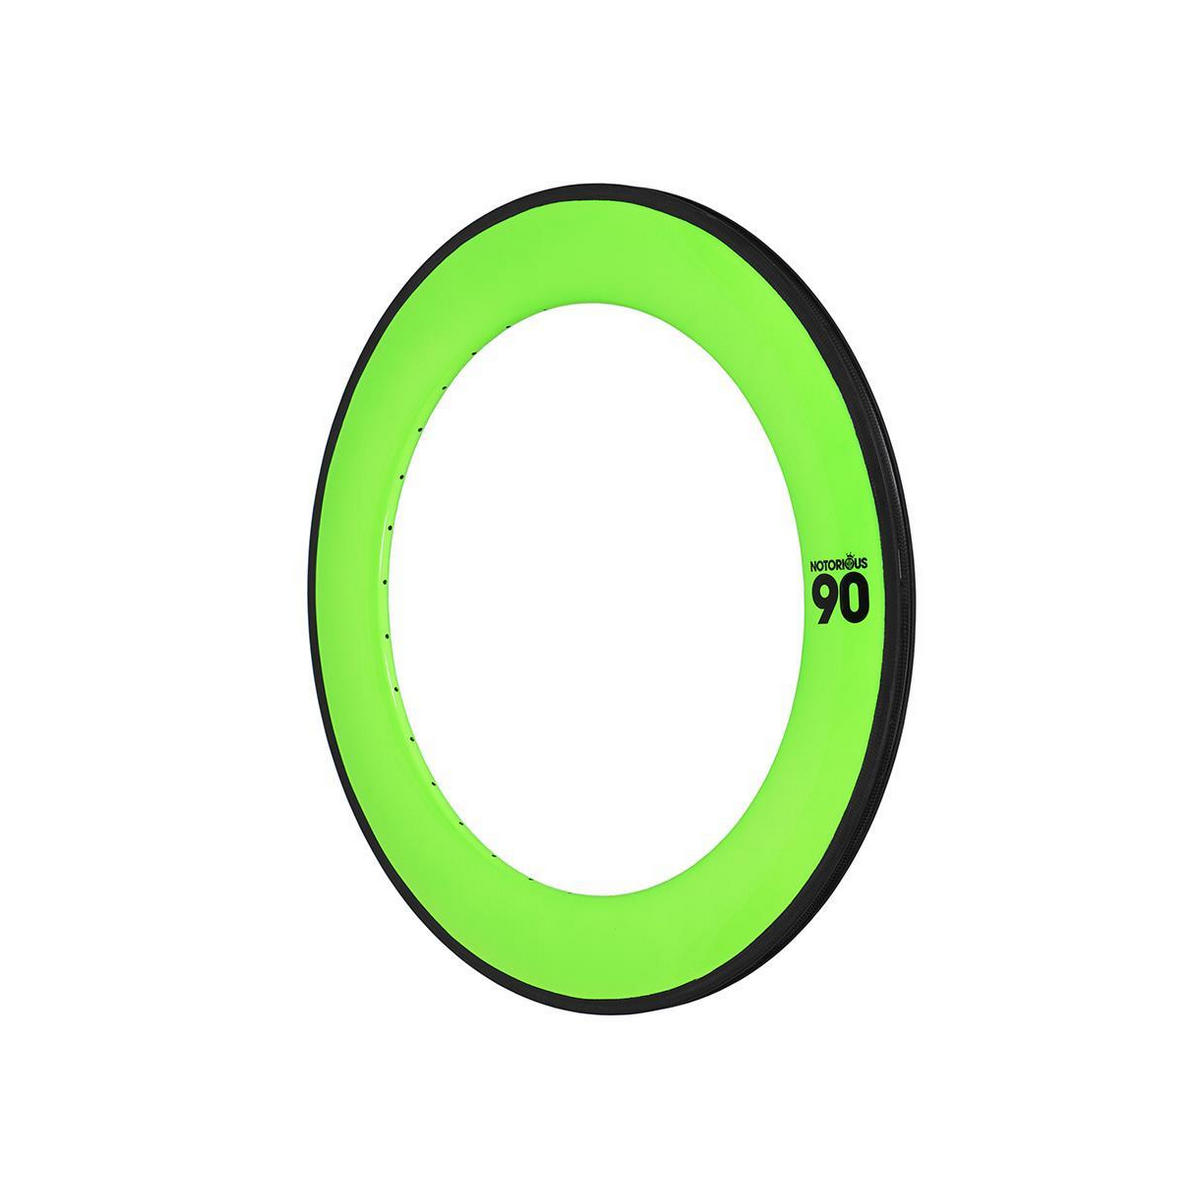 cerchio notorious 90 700c carbon 32h msw verde fluo